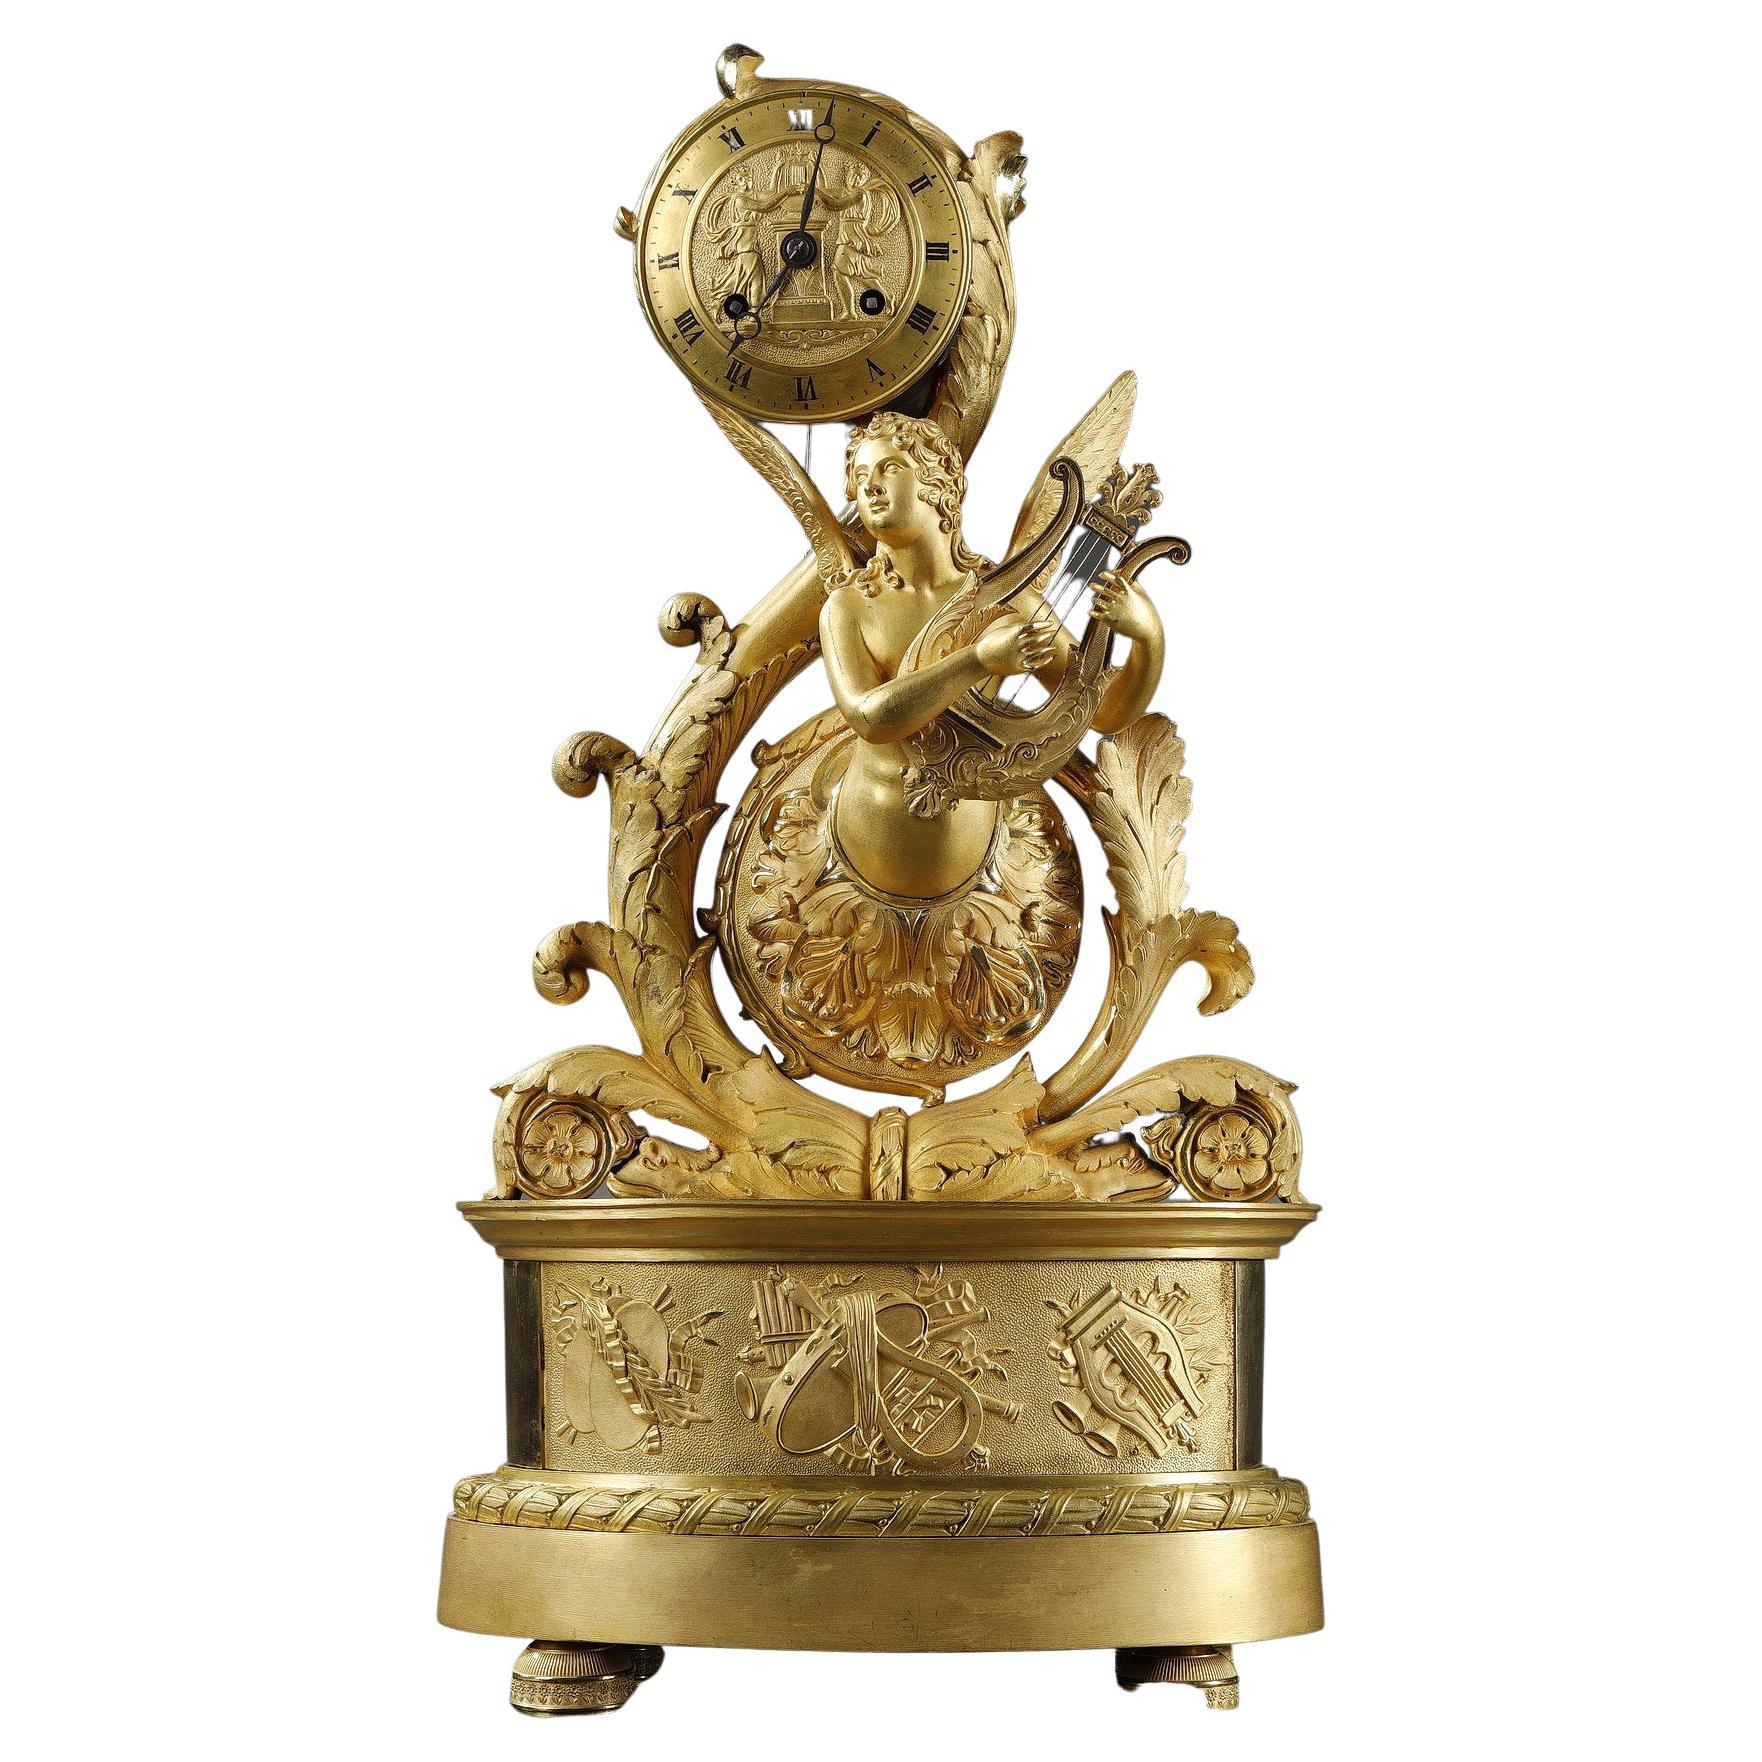 Horloge en bronze doré avec génie ailé, période Charles X